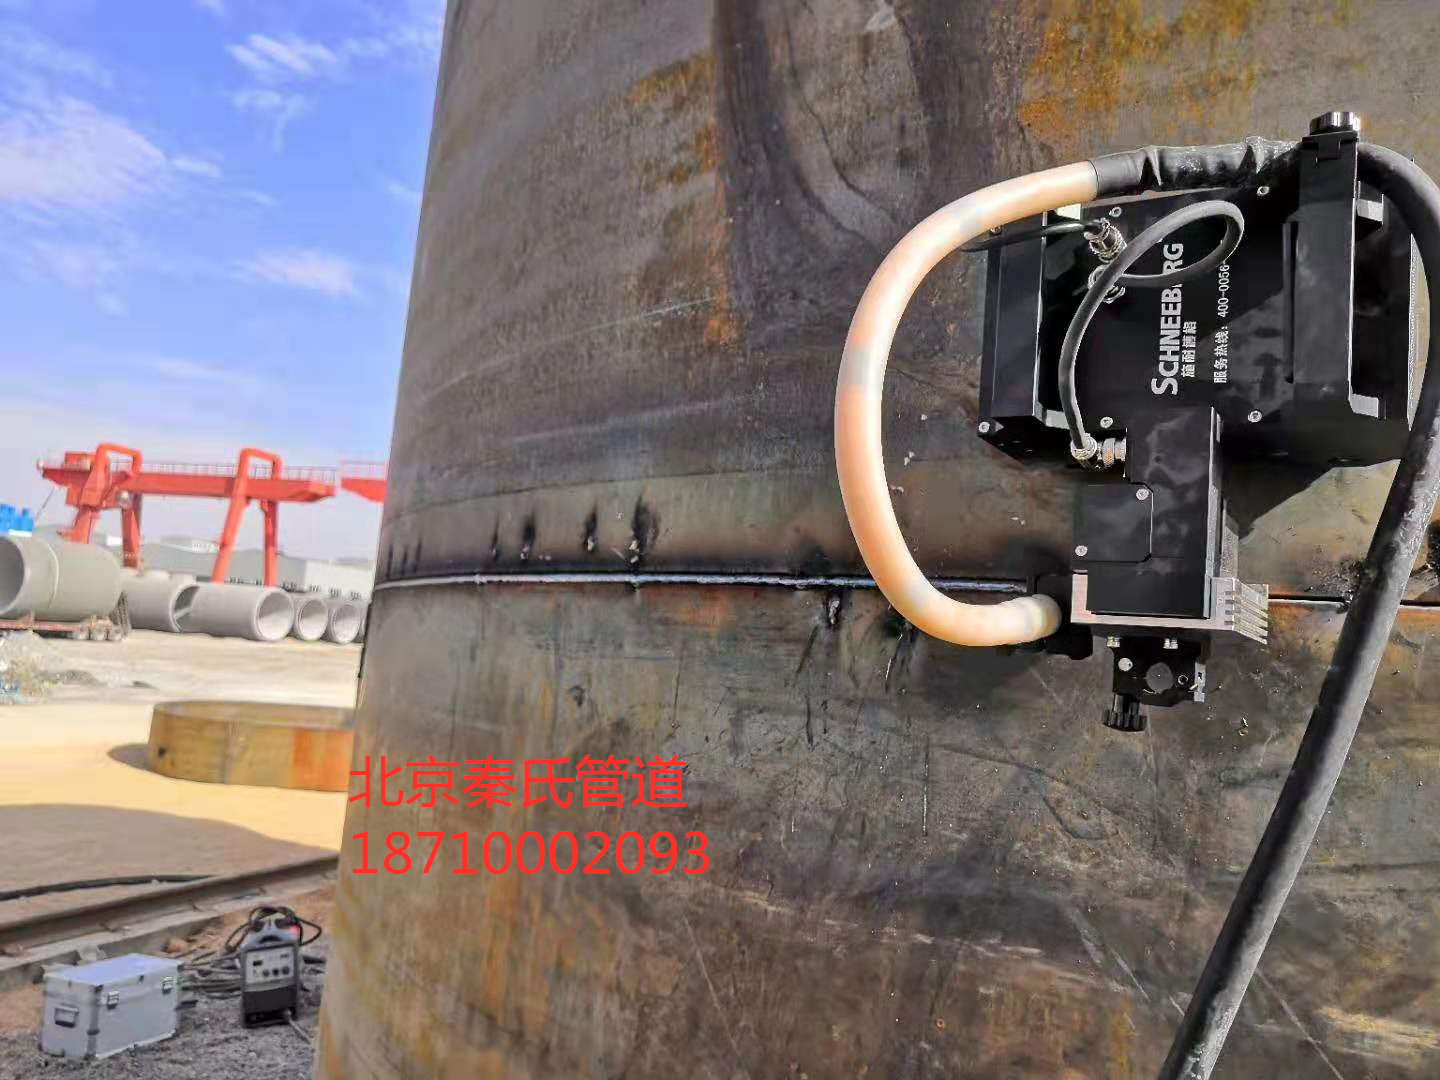 合金钢管道自动焊机 管道自动焊机 管道自动焊机图片